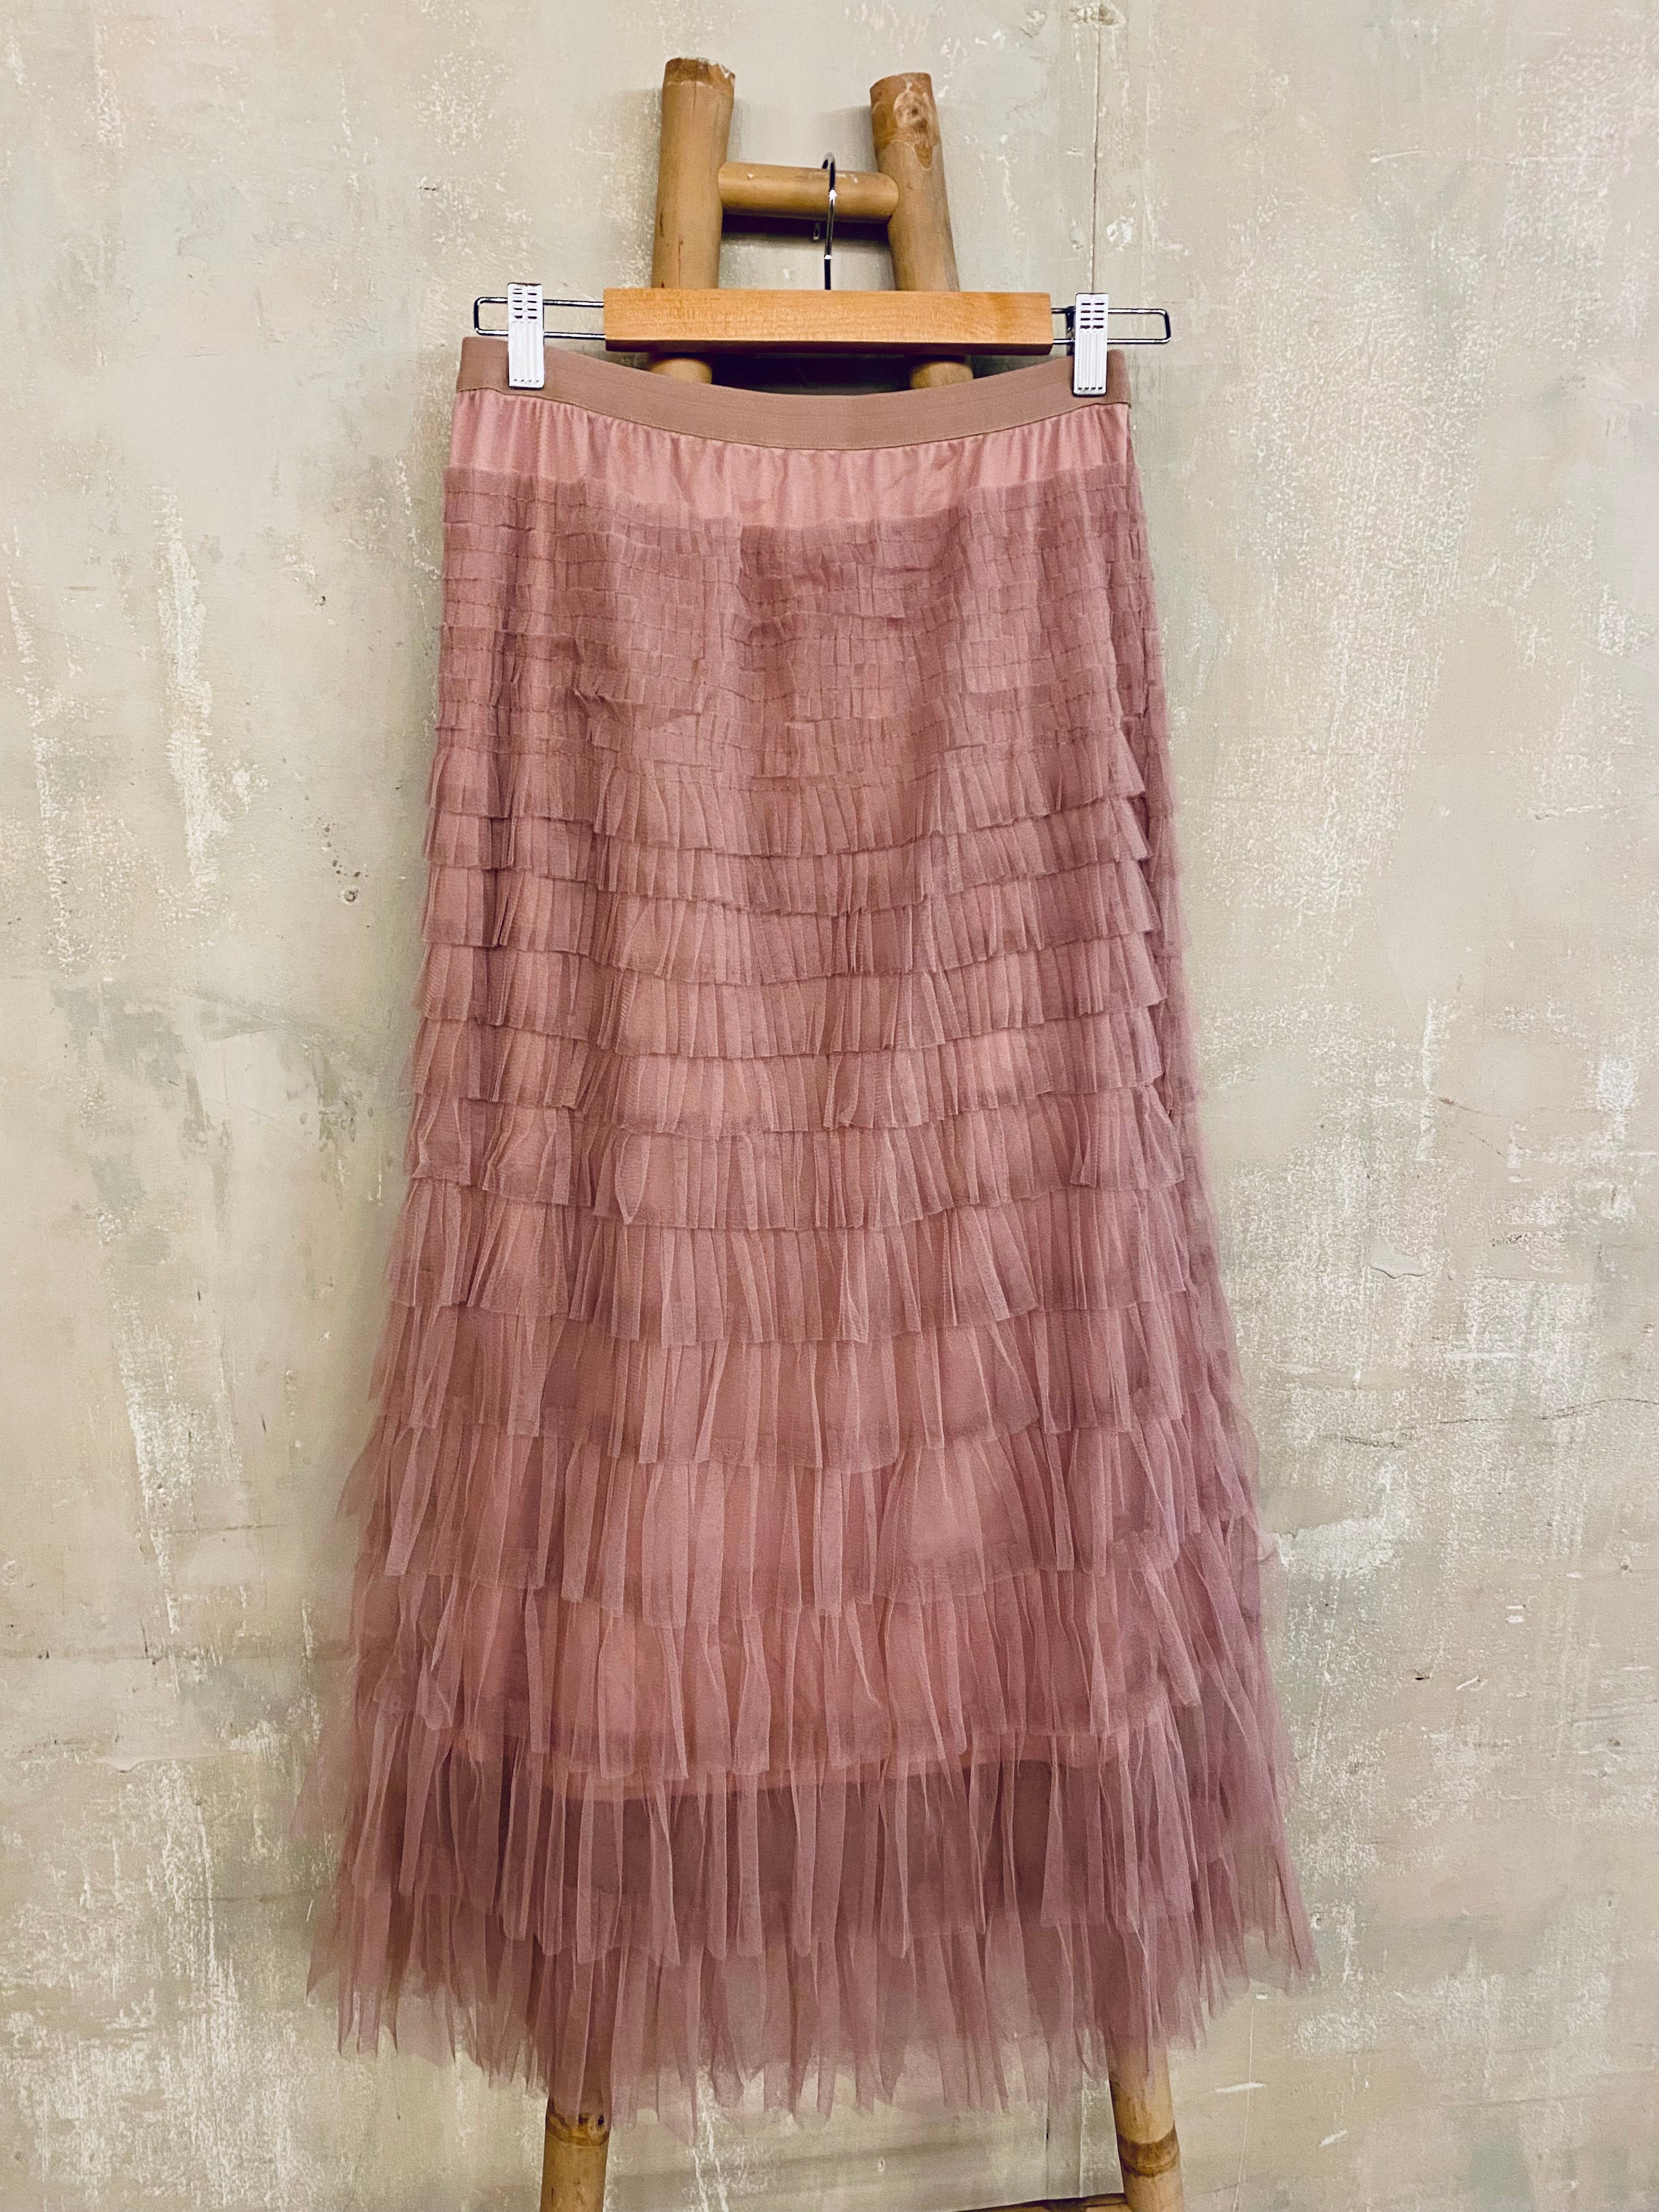 Ruffle mesh skirt